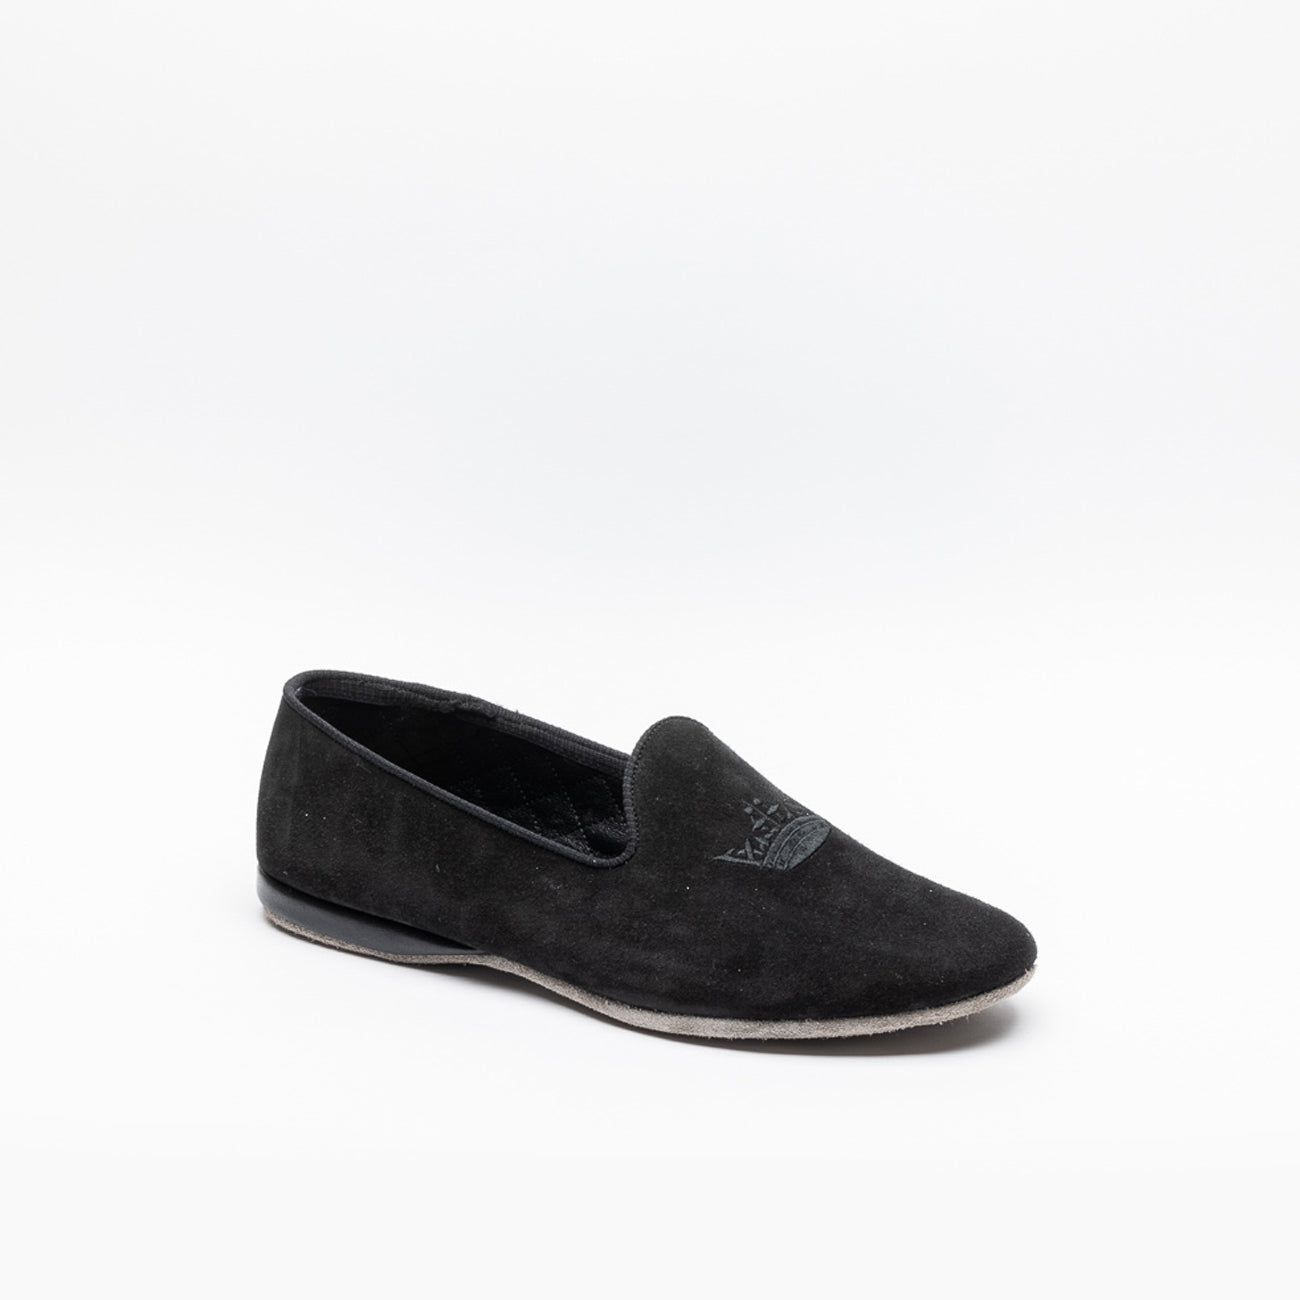 Church's black suede slipper